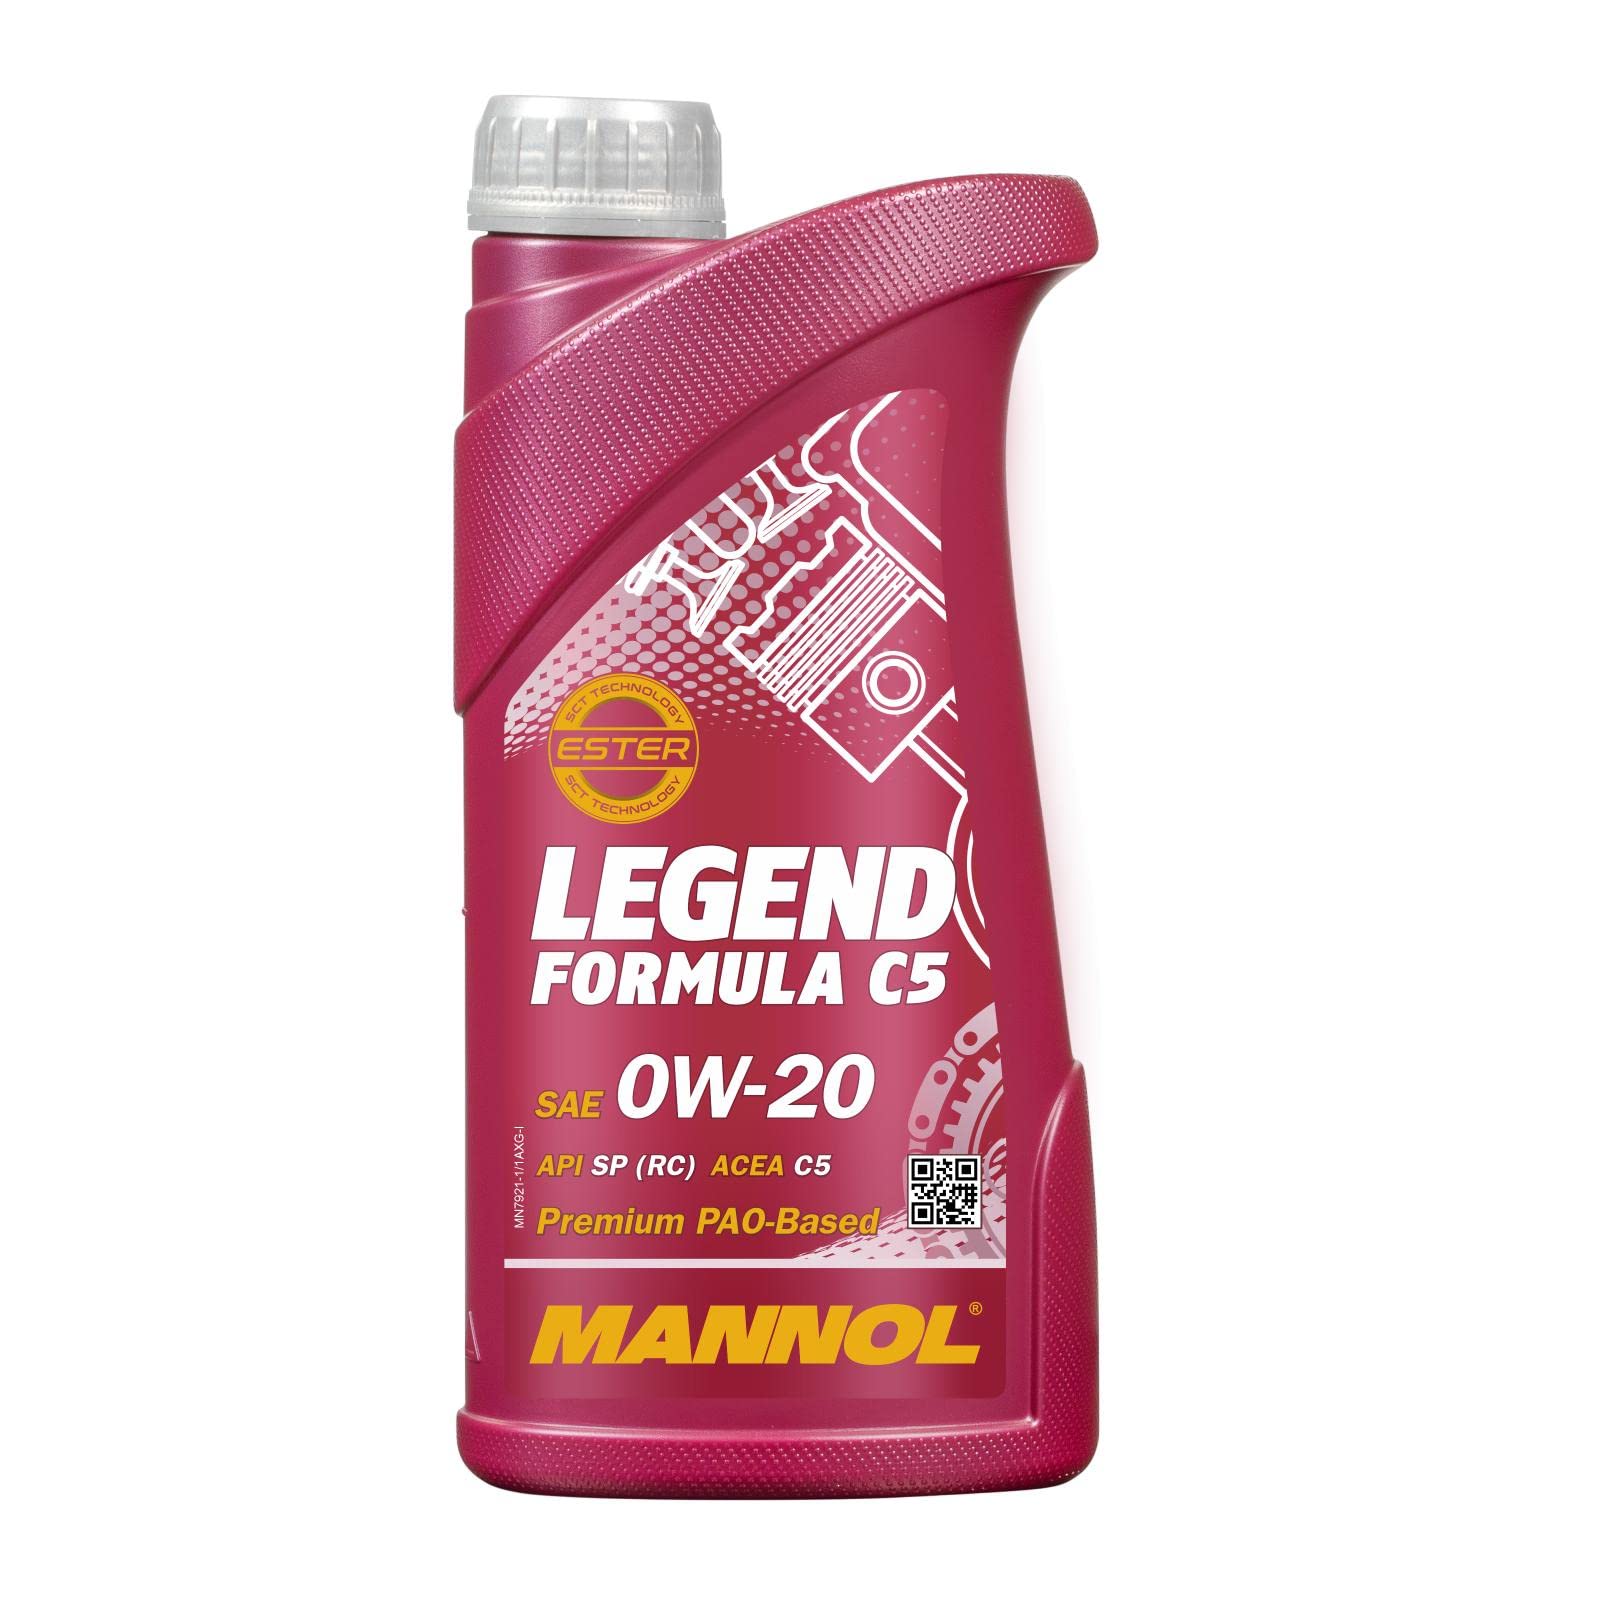 LEGEND FORMULA C5 1 Liter von MANNOL